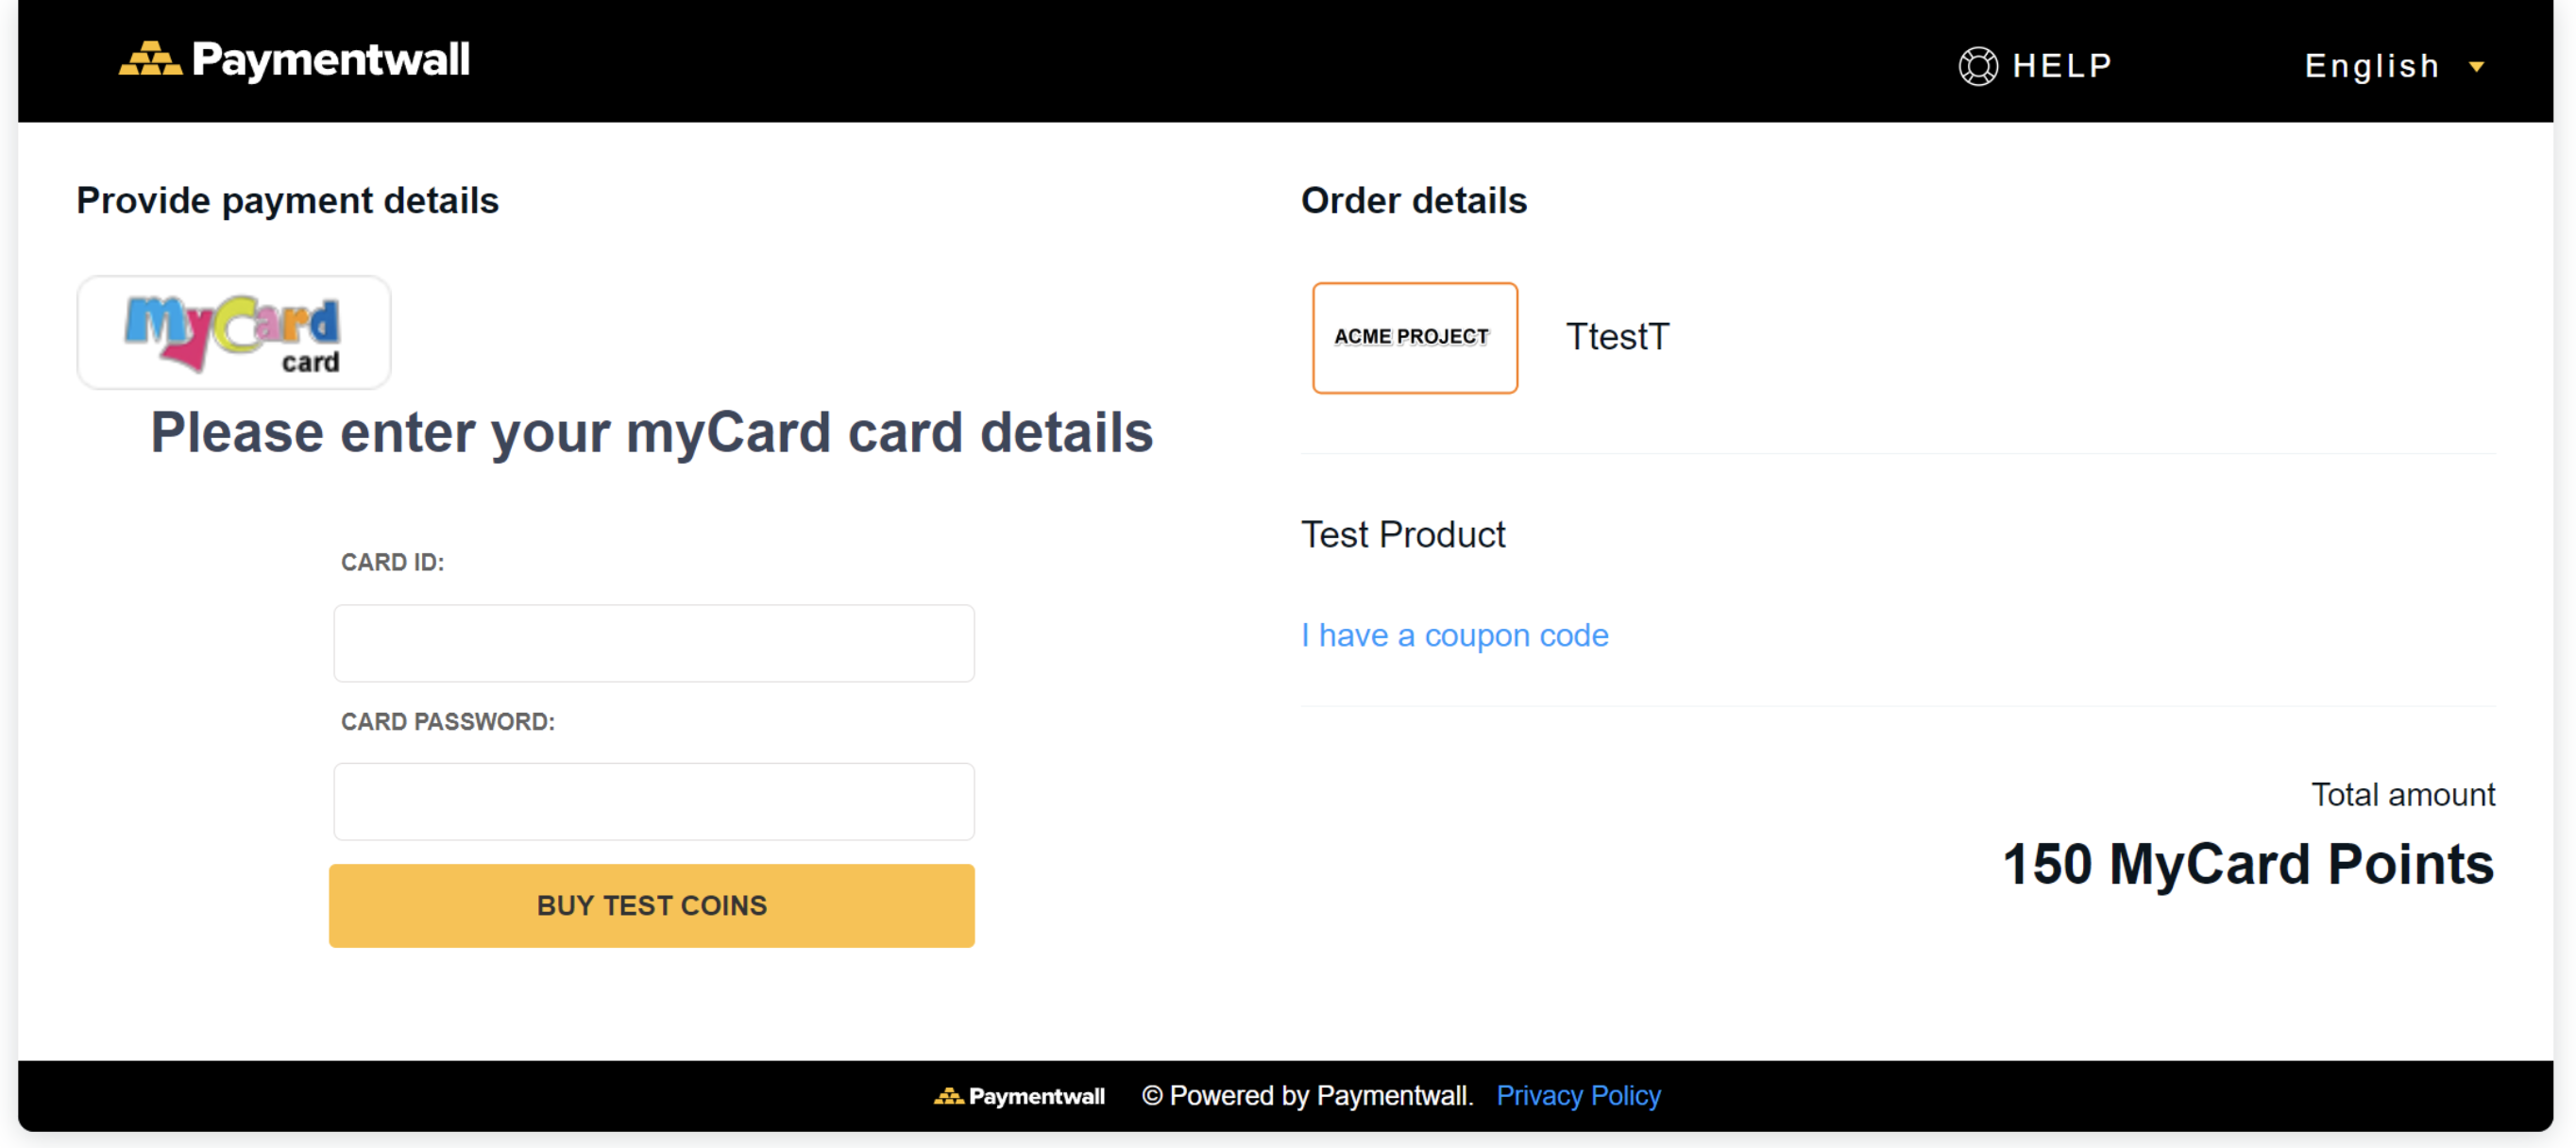 MyCard Card preset